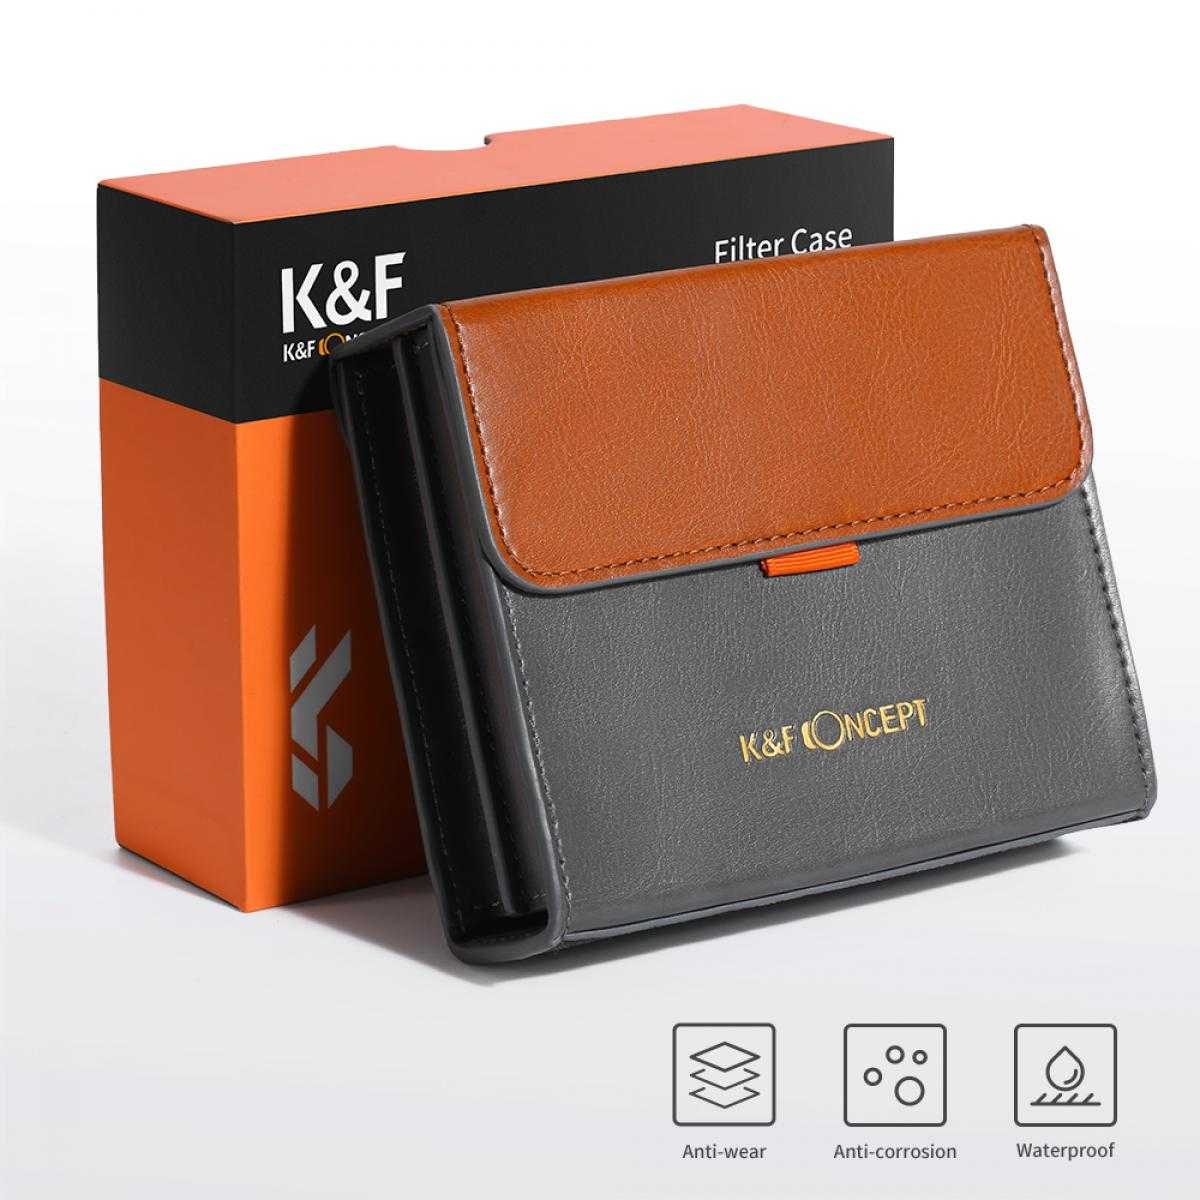 K&F CONCEPT FILTER Slim UV 49mm